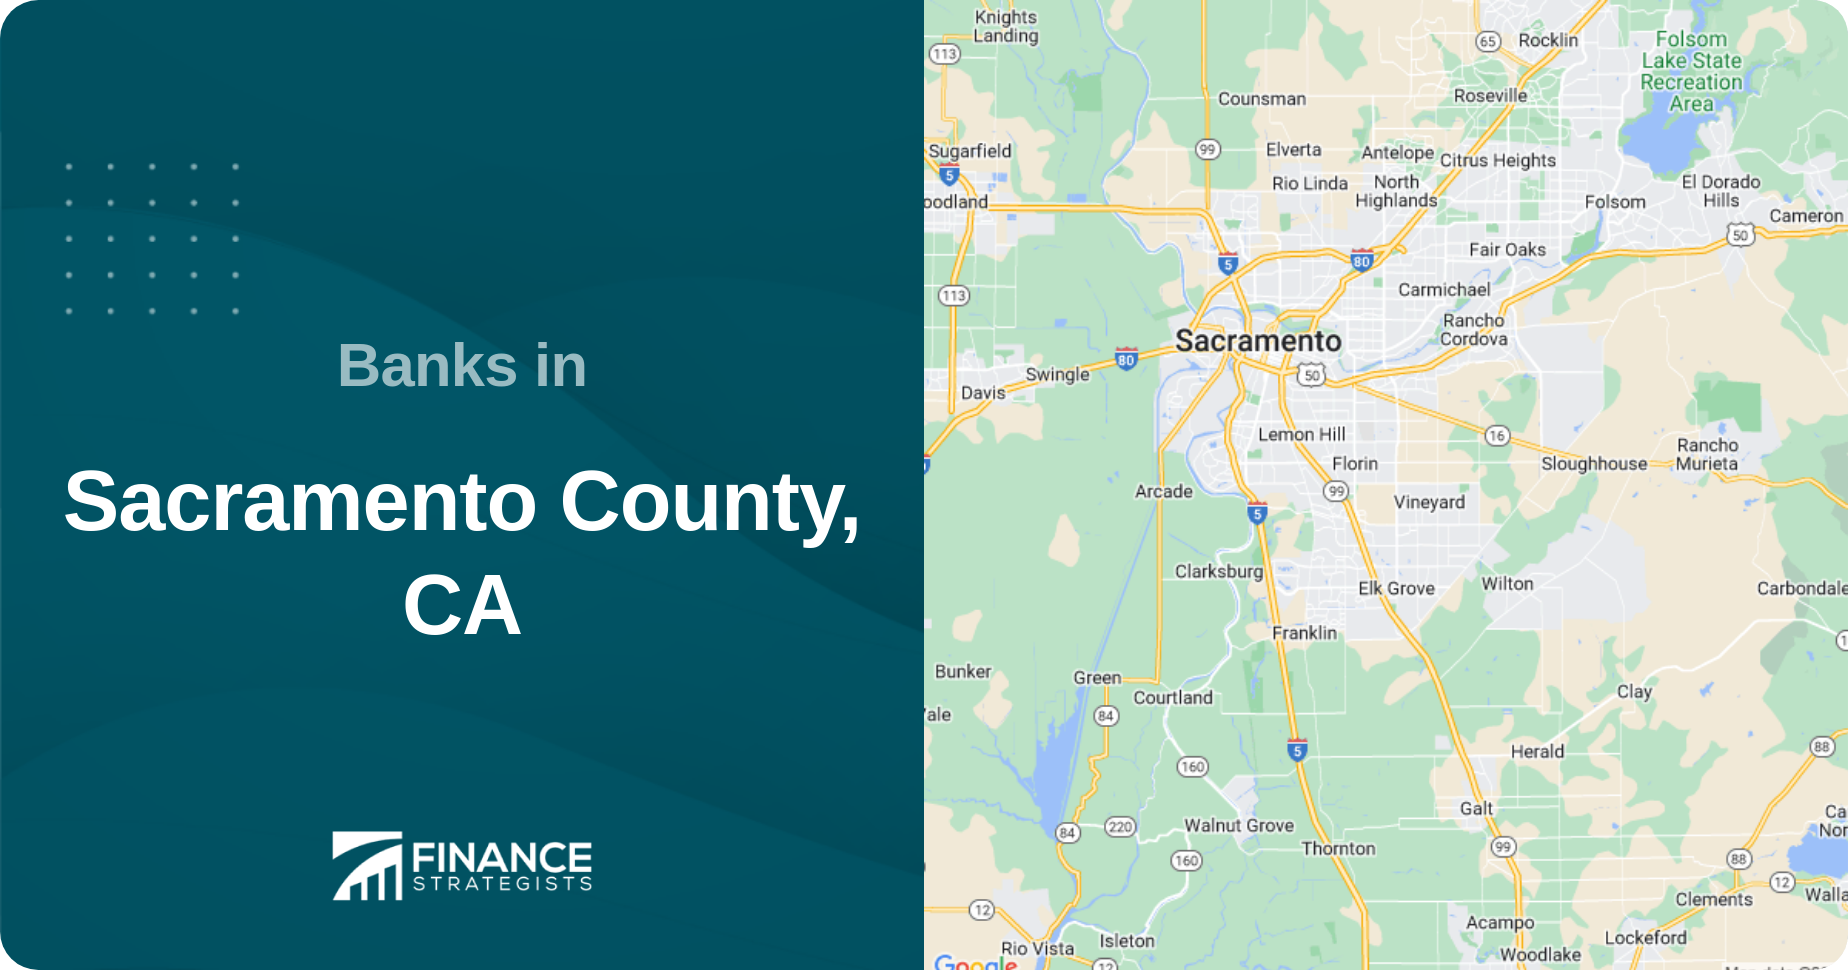 Banks in Sacramento County, CA